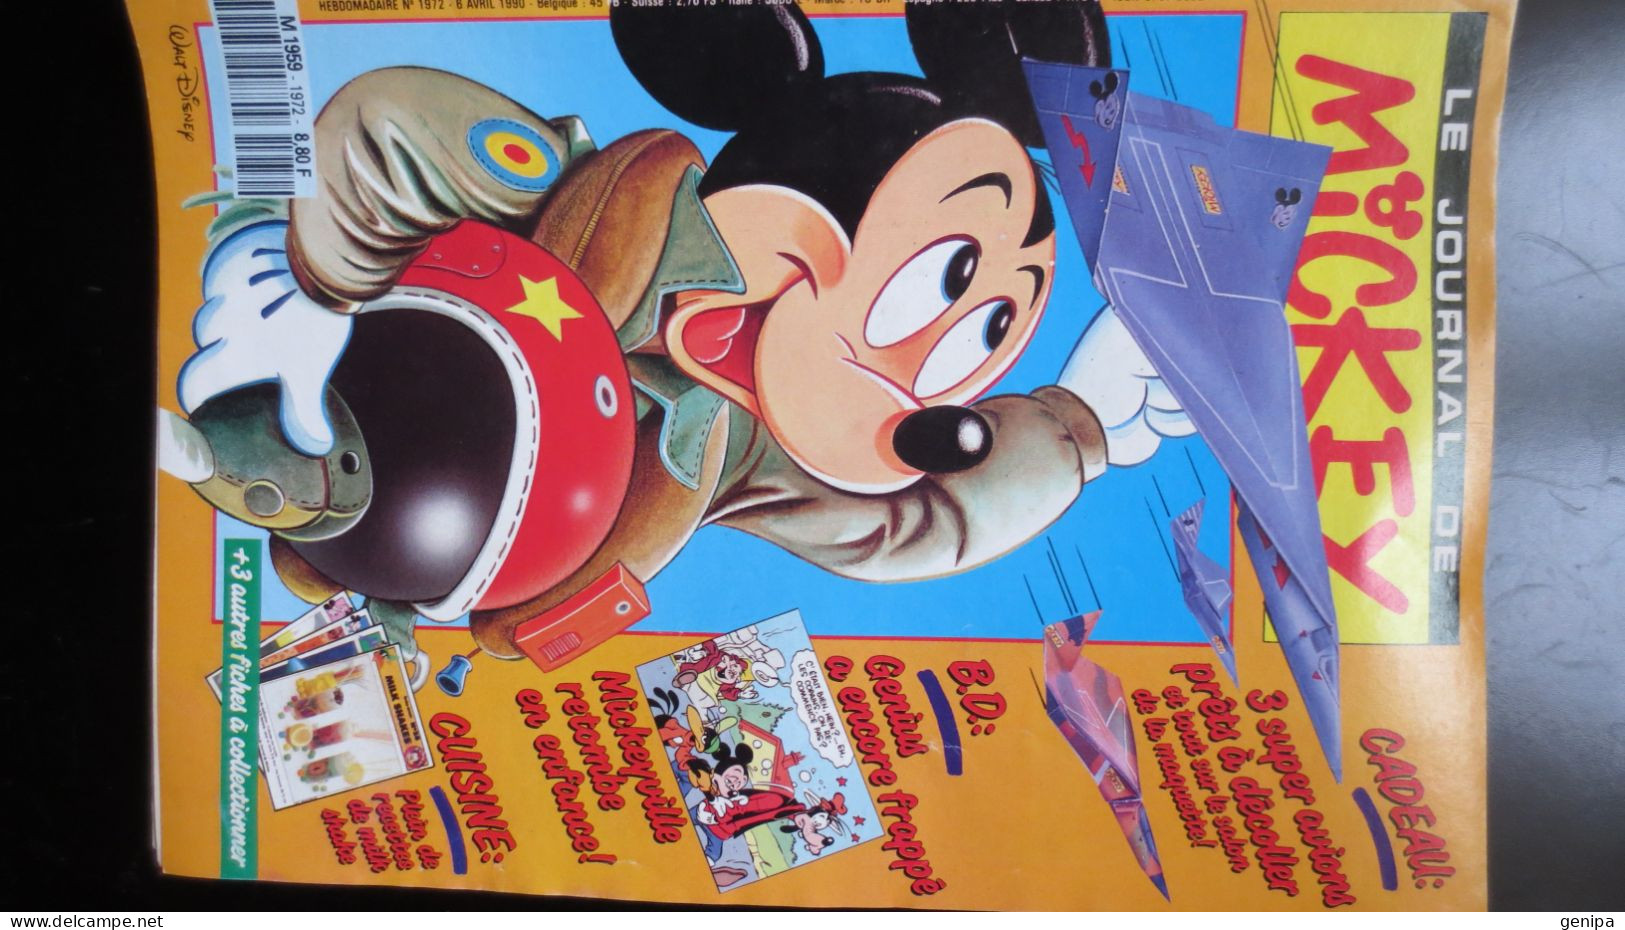 JOURNAL DE MICKEY N° 1972.  Année 1990 - Journal De Mickey